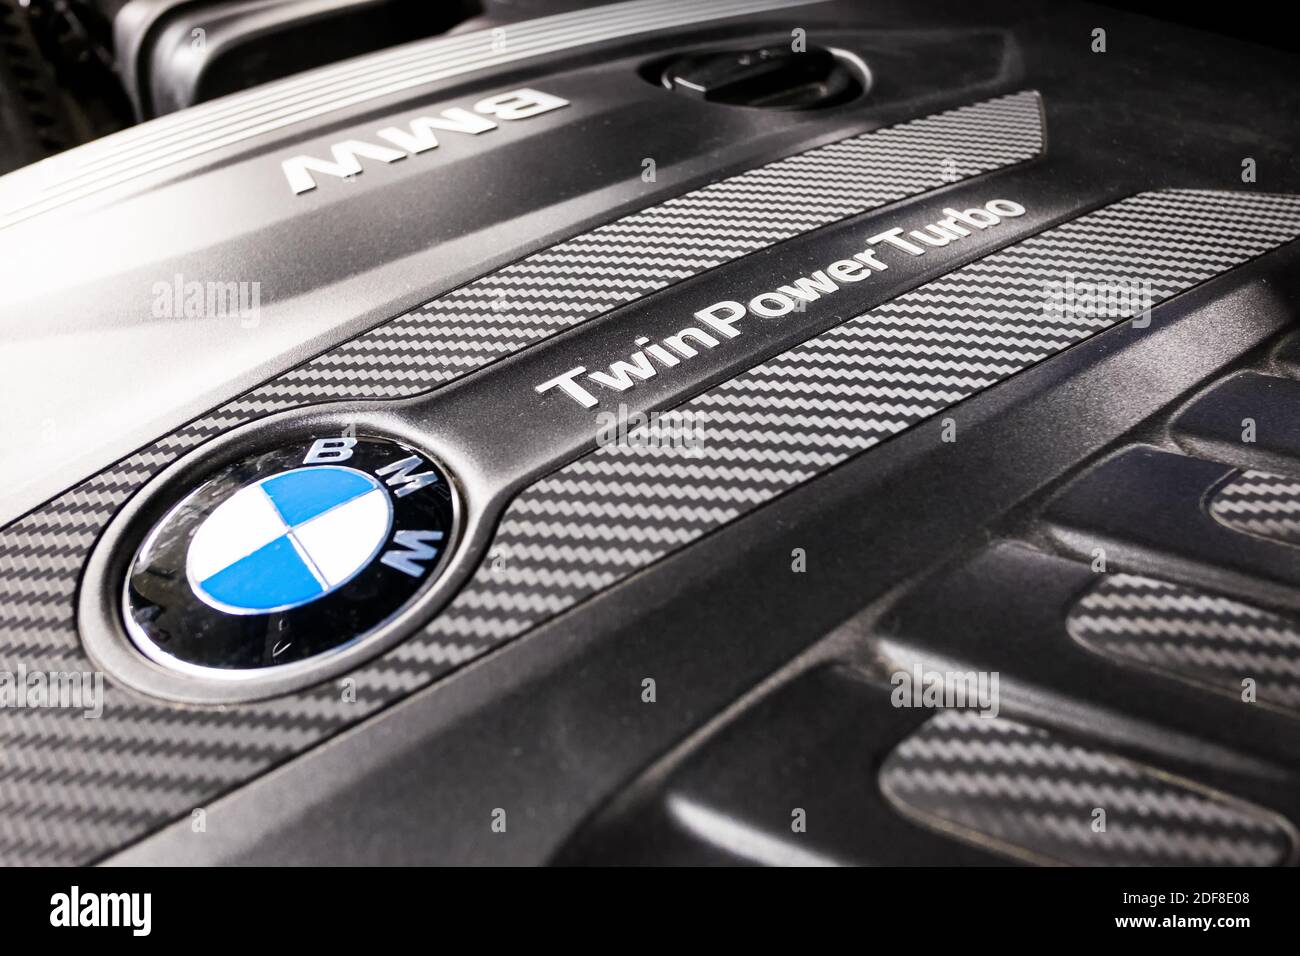 Motorabdeckung BMW Twin Power Turbo Stockfotografie - Alamy